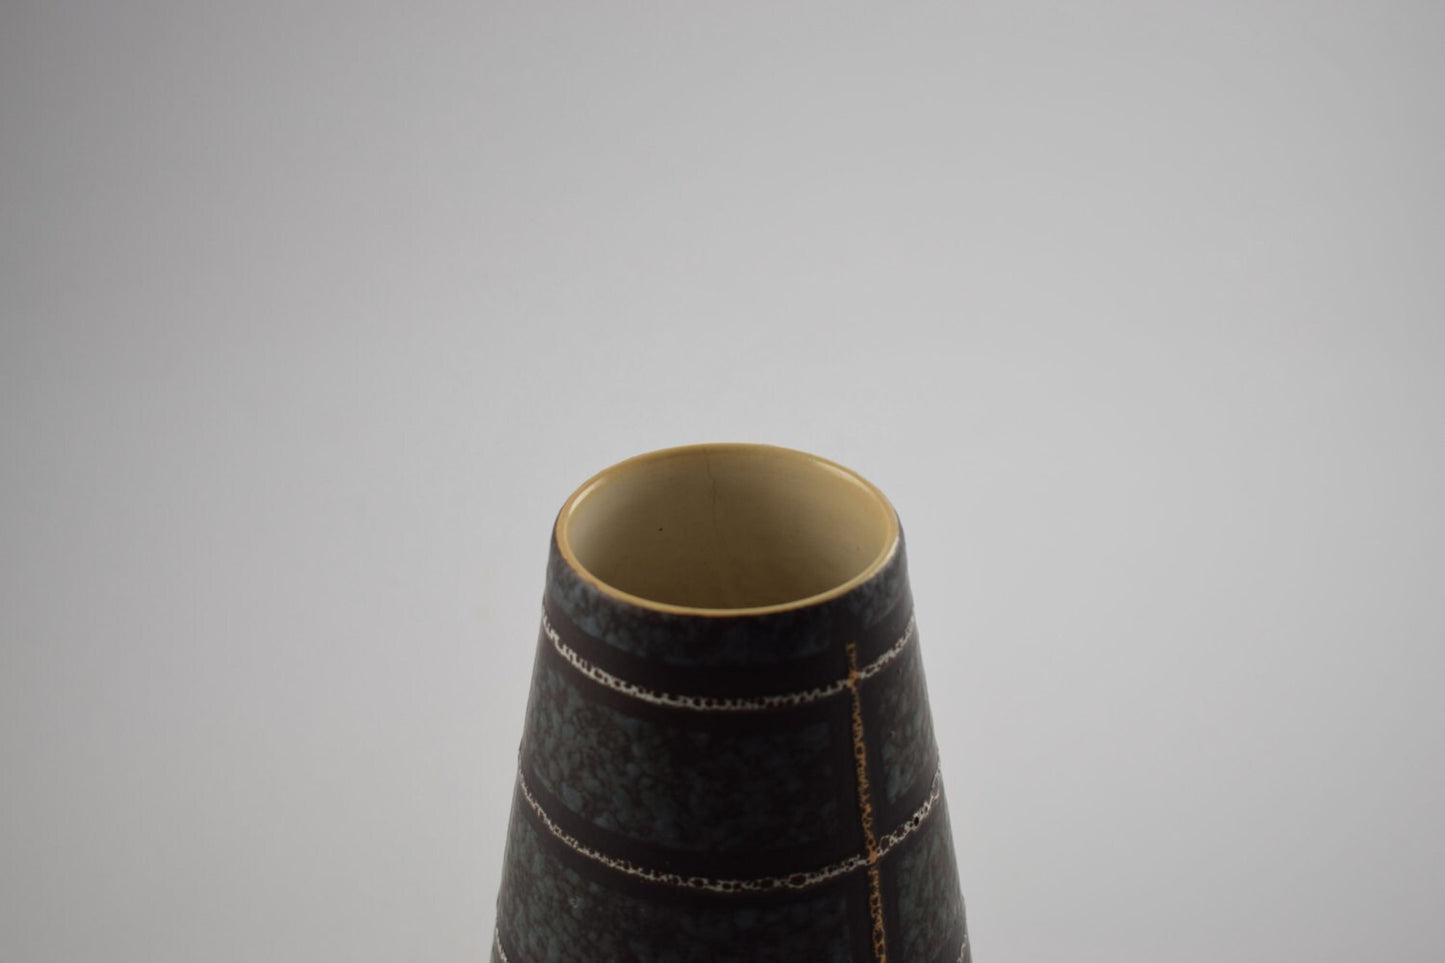 Eckhardt Engler keramik German vase from the 1960s